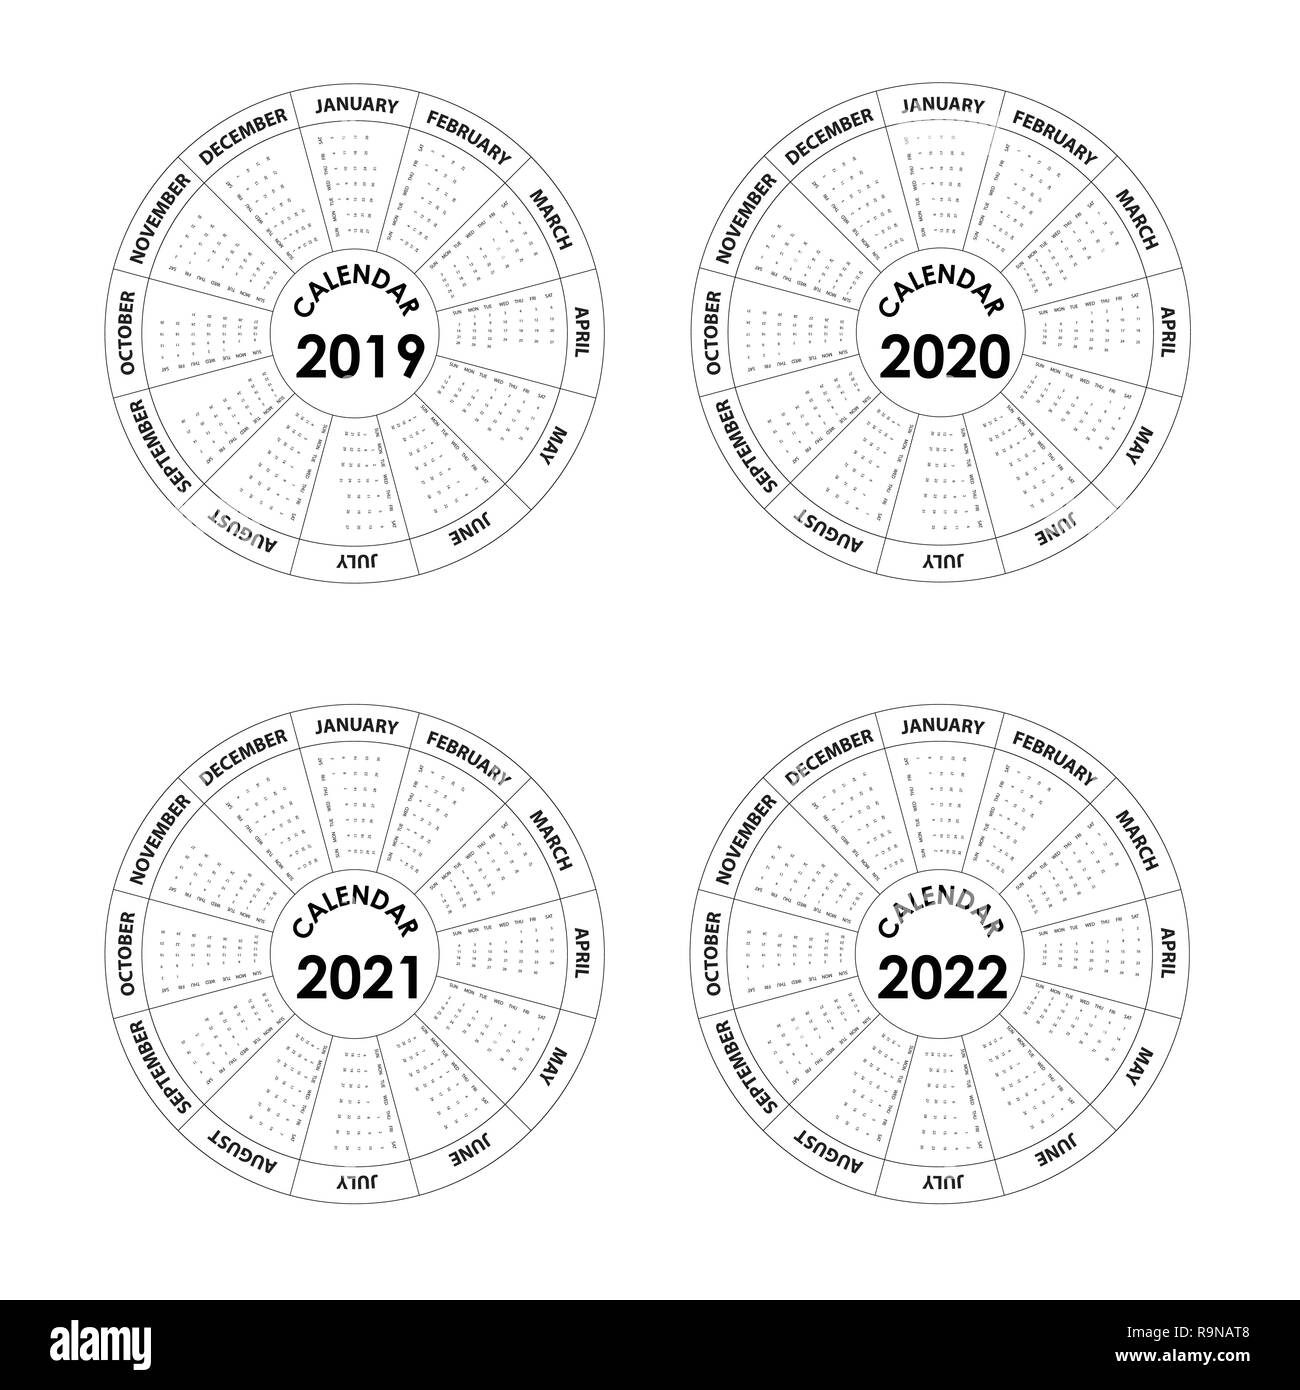 Calendrier 2019, 2020, 2021 et 2022 modèle Agenda.design.Calendrier Calendrier de l'année modèle de vecteur conception.Vector illustration. Illustration de Vecteur